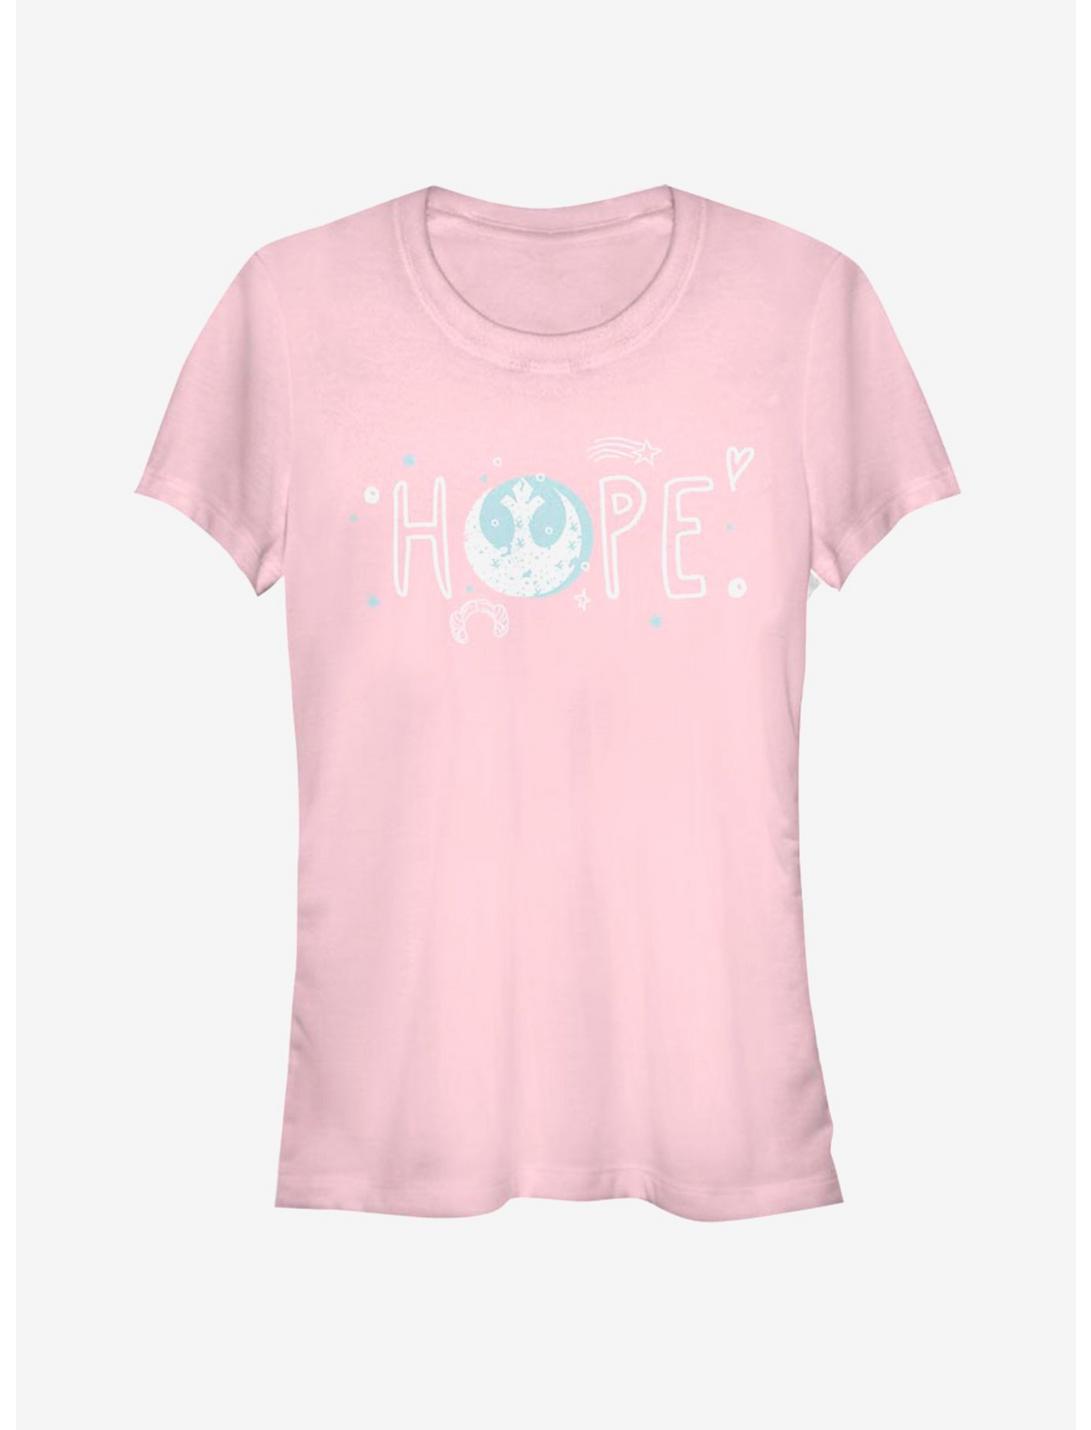 Star Wars Hope Doodles Girls T-Shirt, LIGHT PINK, hi-res